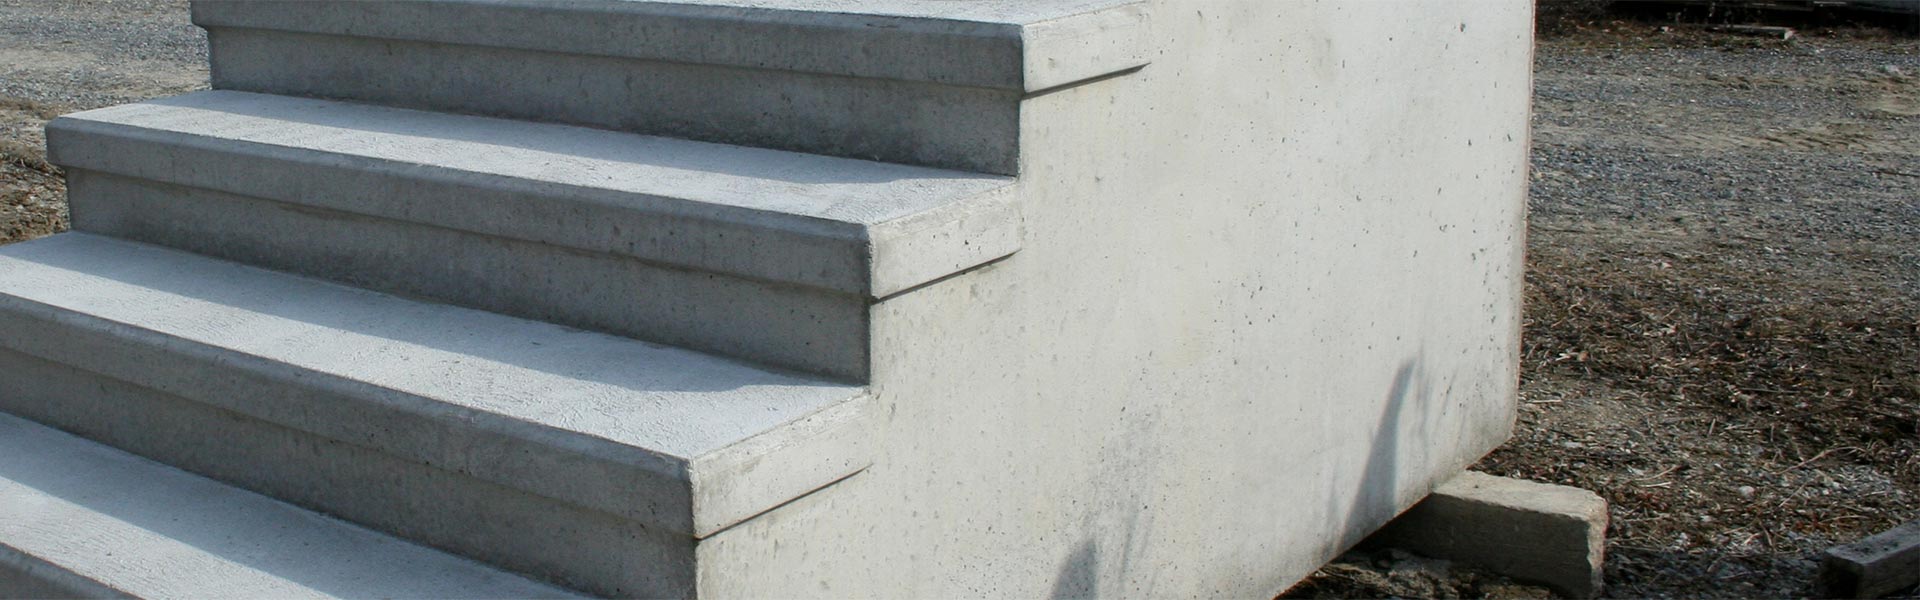 Masters Concrete | Concrete Step Units | Overview